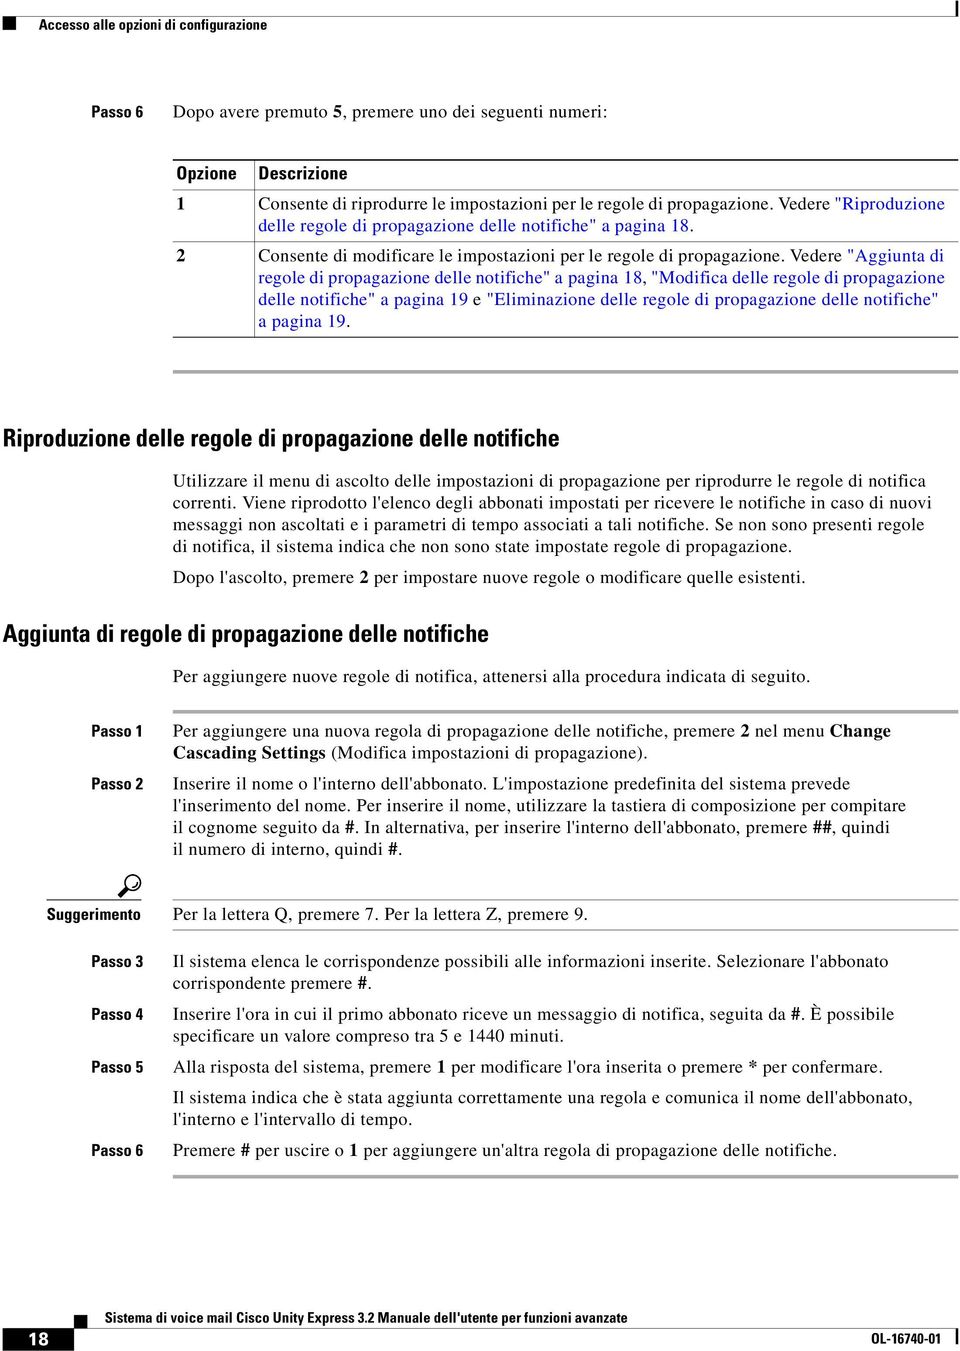 Vedere "Aggiunta di regole di propagazione delle notifiche" a pagina 18, "Modifica delle regole di propagazione delle notifiche" a pagina 19 e "Eliminazione delle regole di propagazione delle